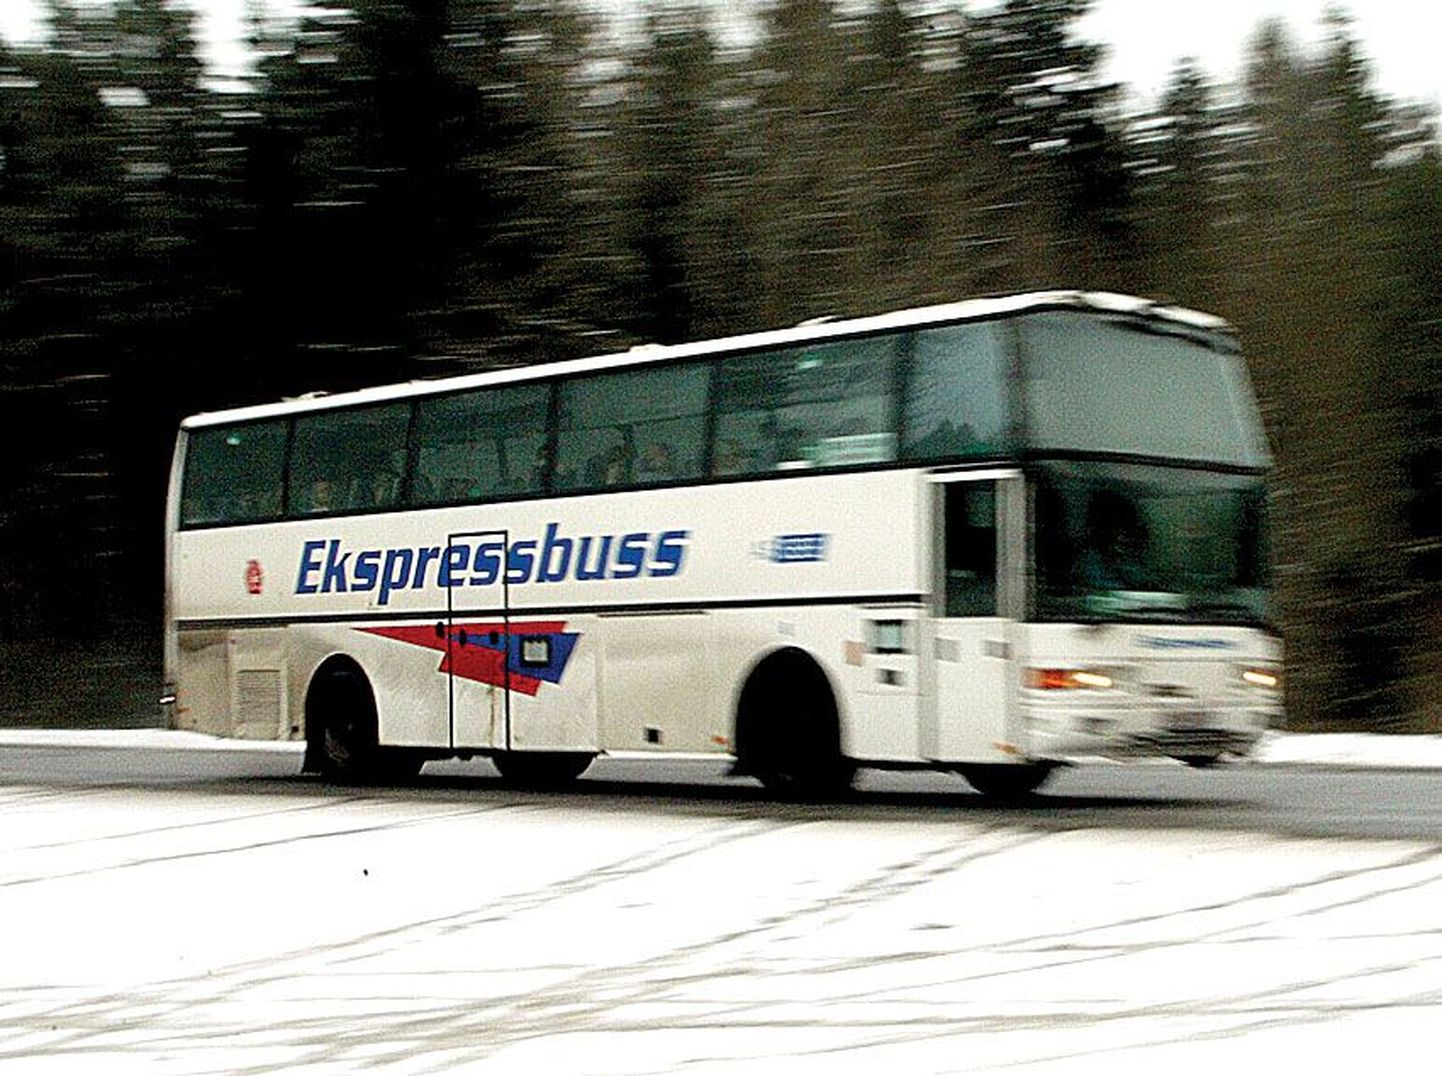 Tallinna-Tartu ekspressbuss.